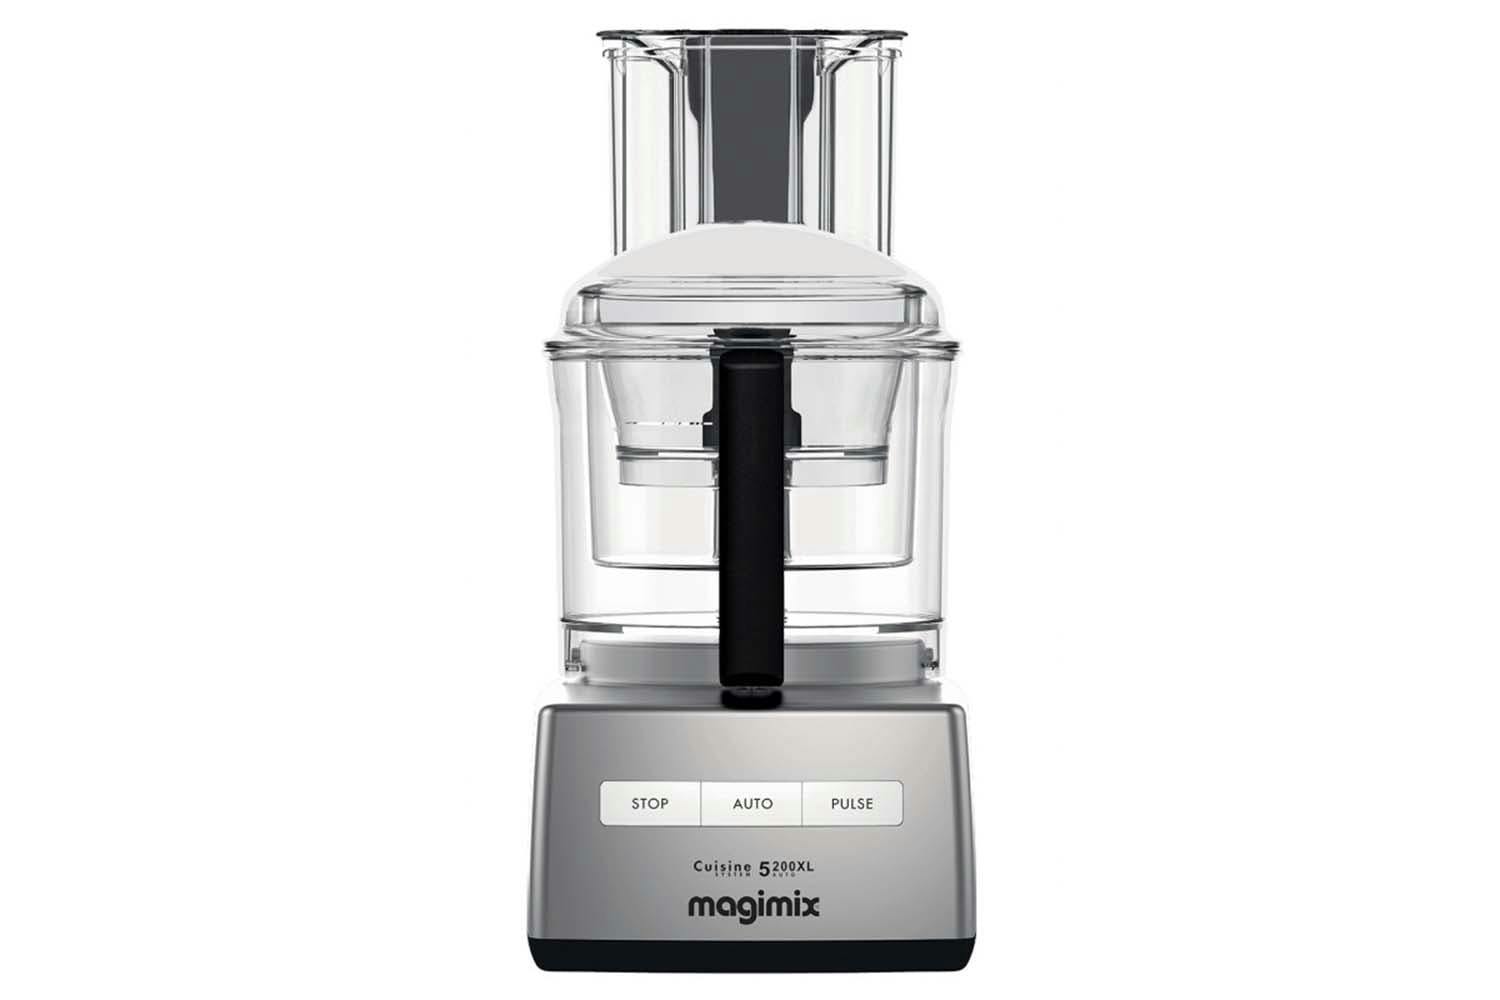 Magimix 5200XL Food Processor | Satin